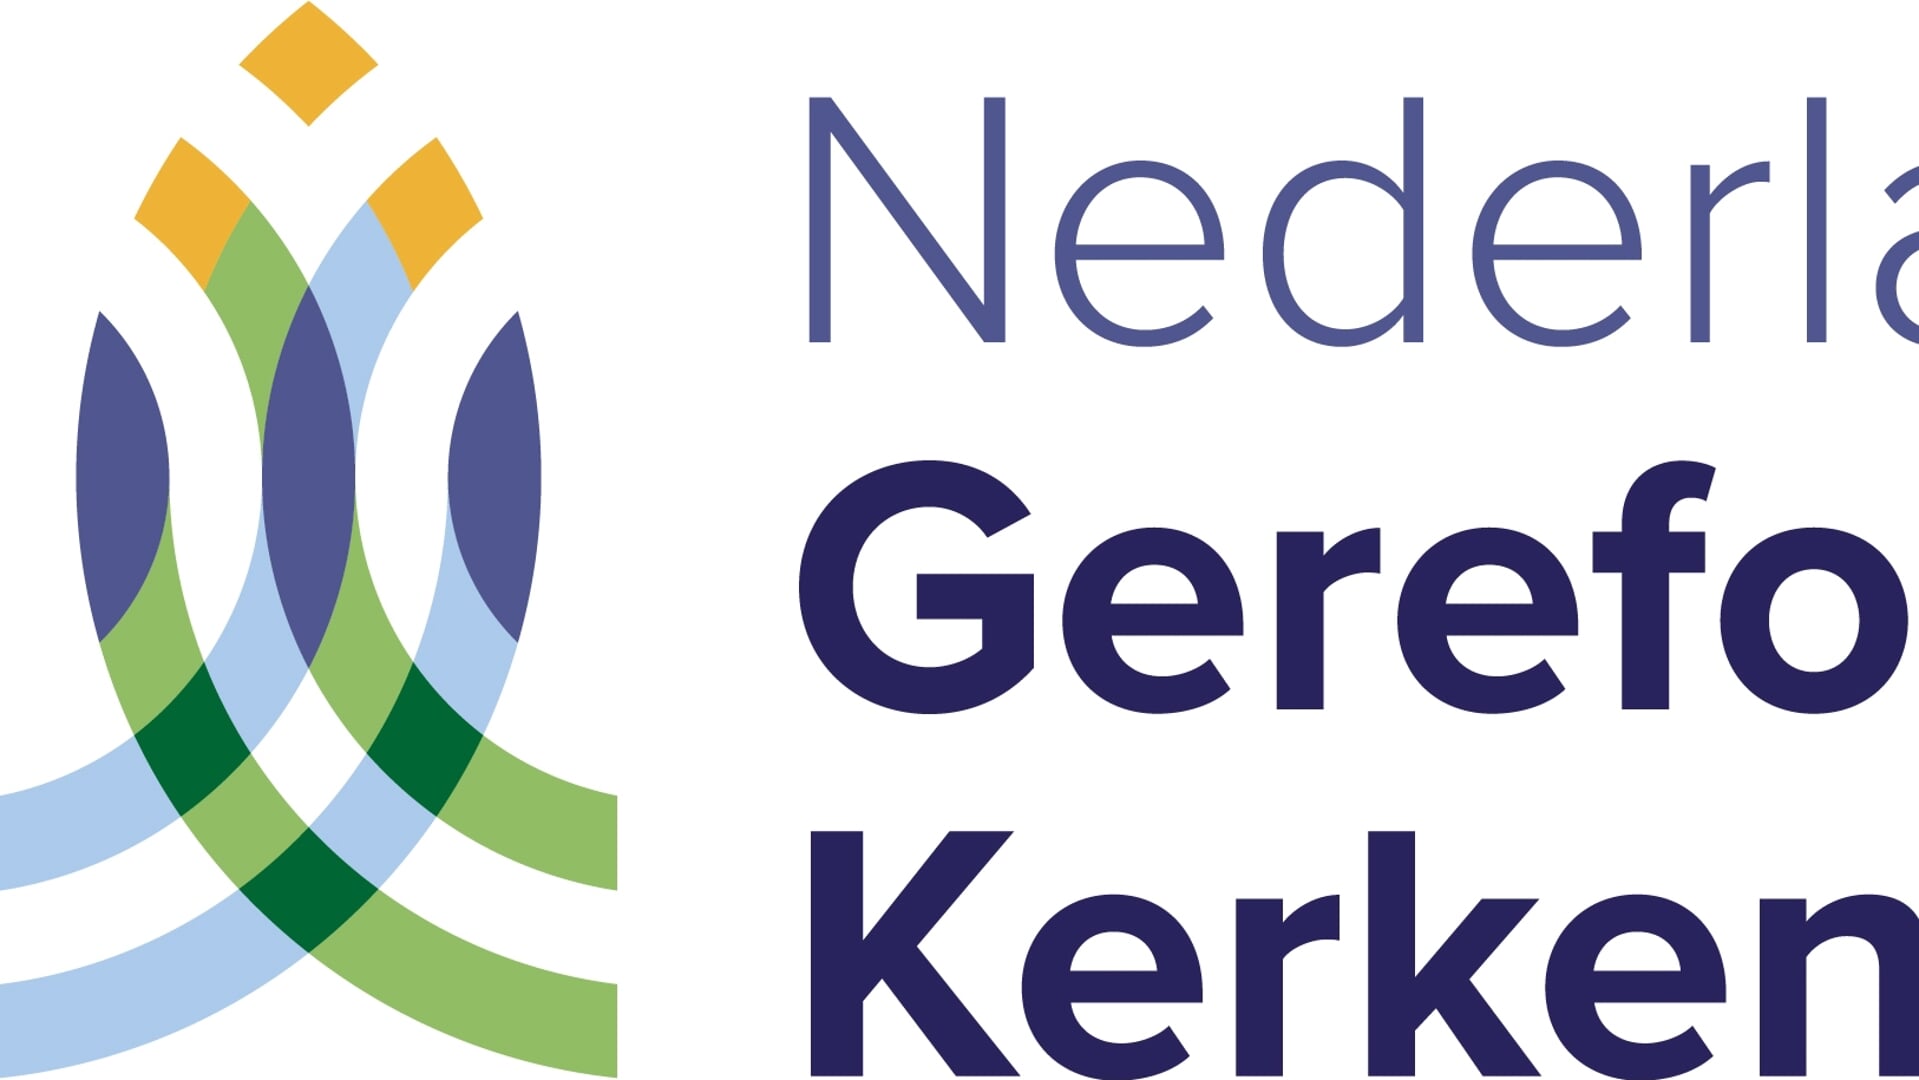 Het logo van de toekomstige Nederlandse Gereformeerde Kerken.